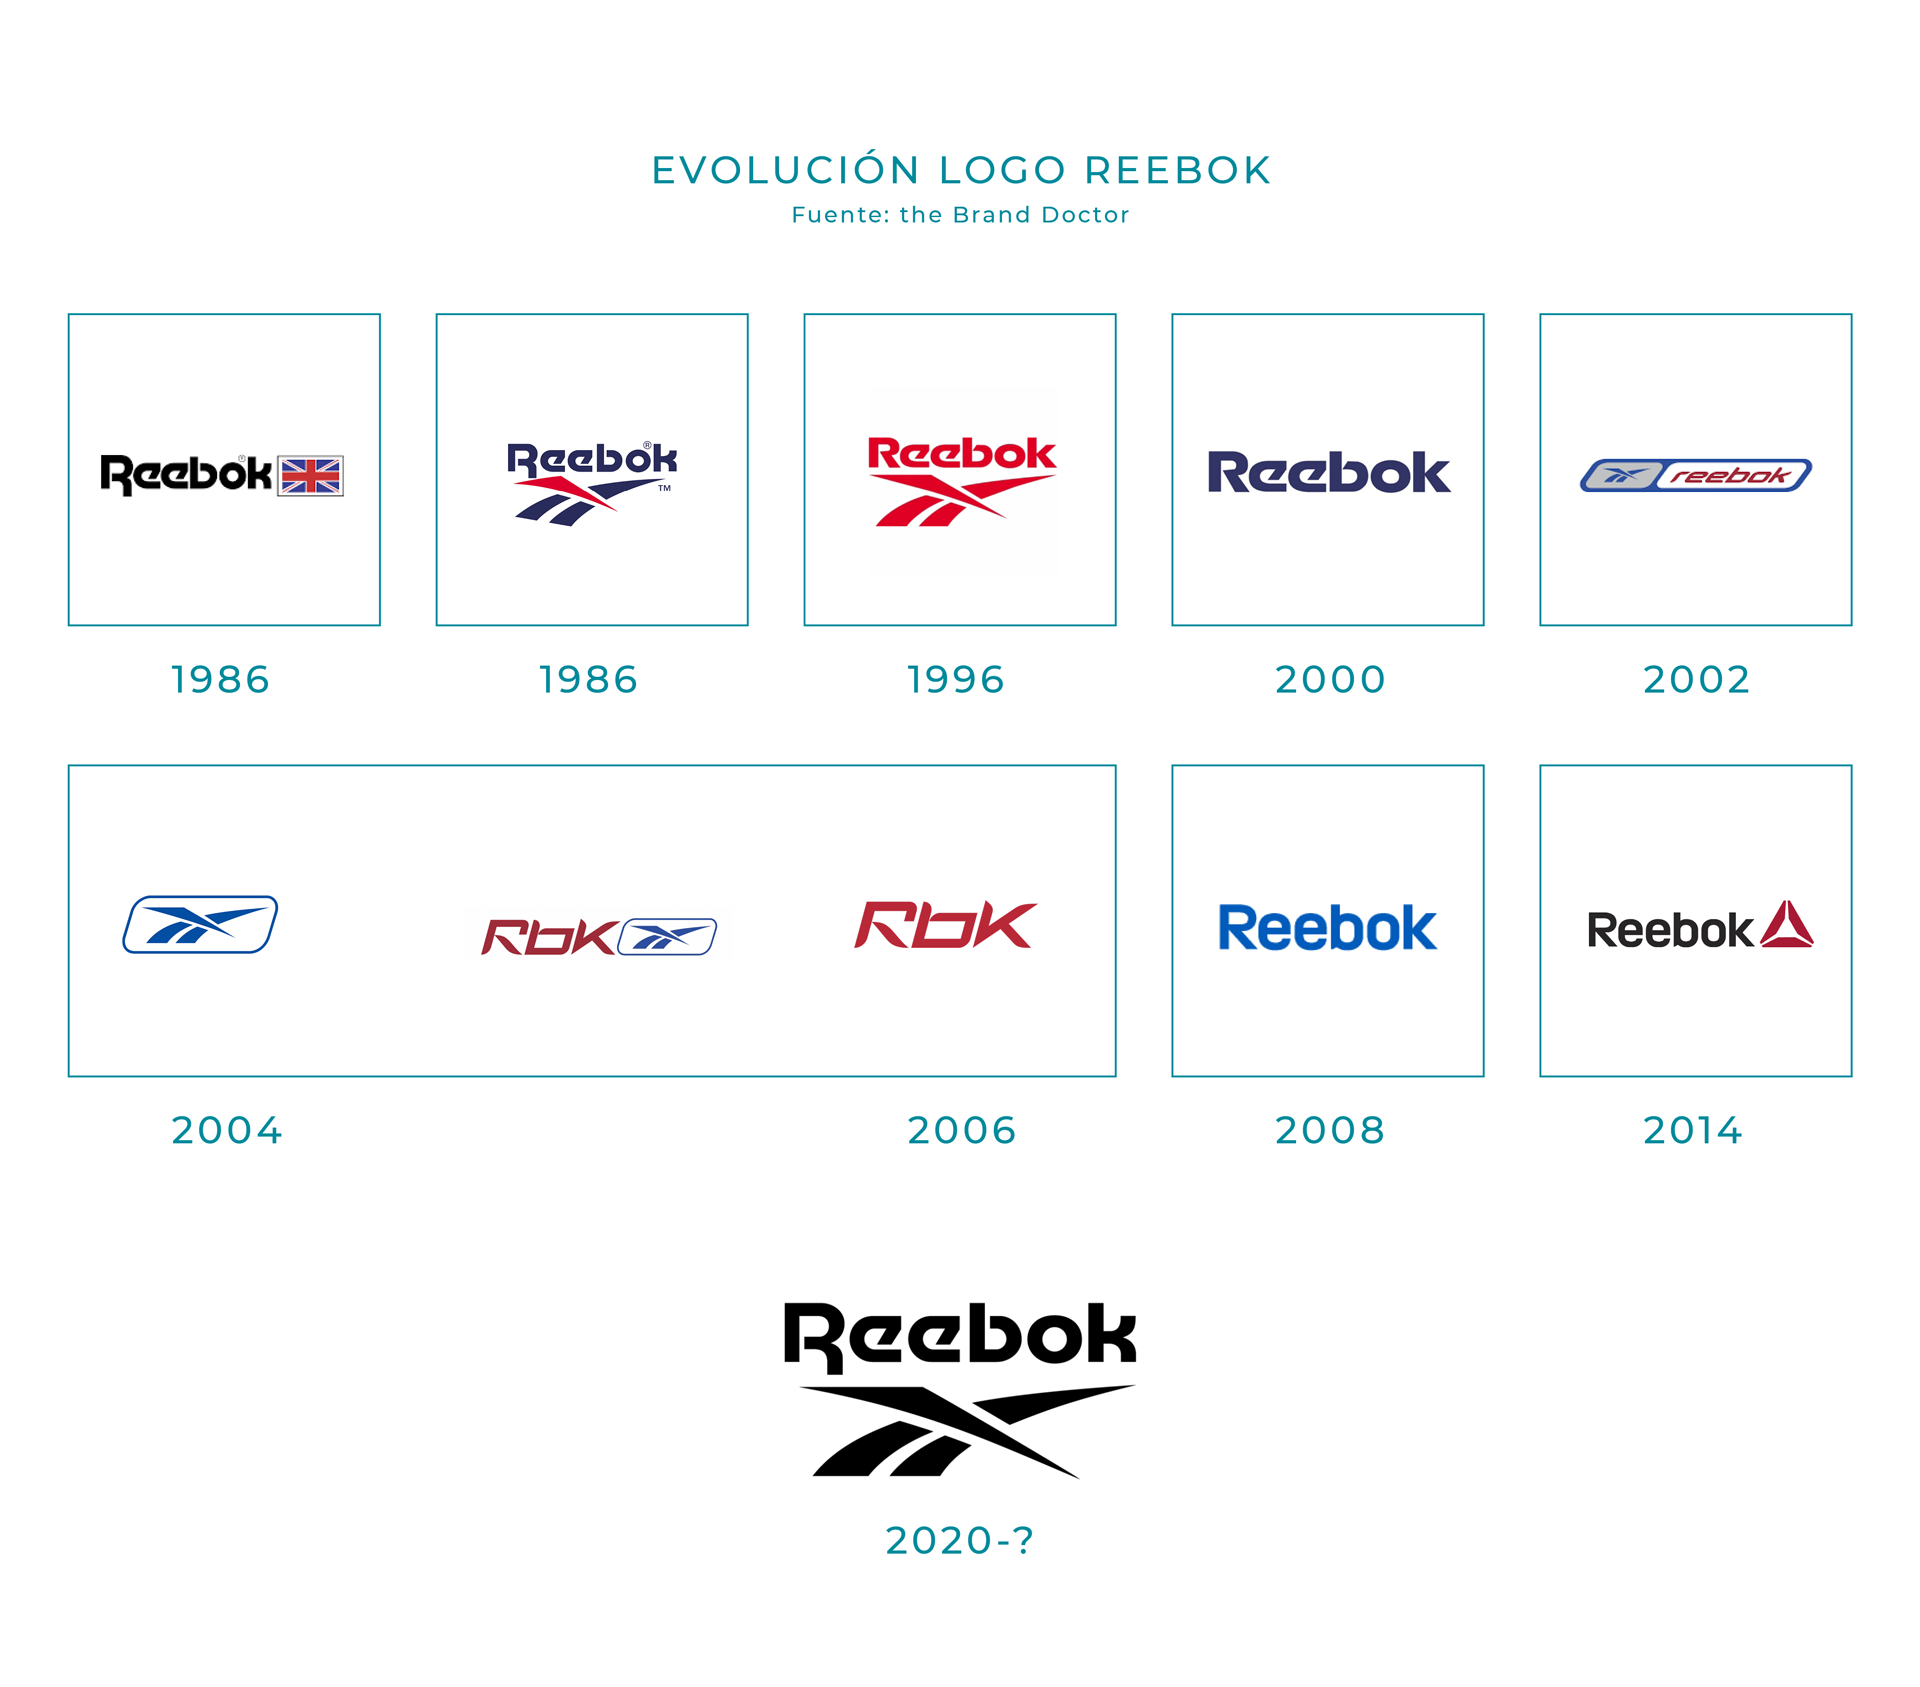 Evolución del logotipo de Reebok desde 1986